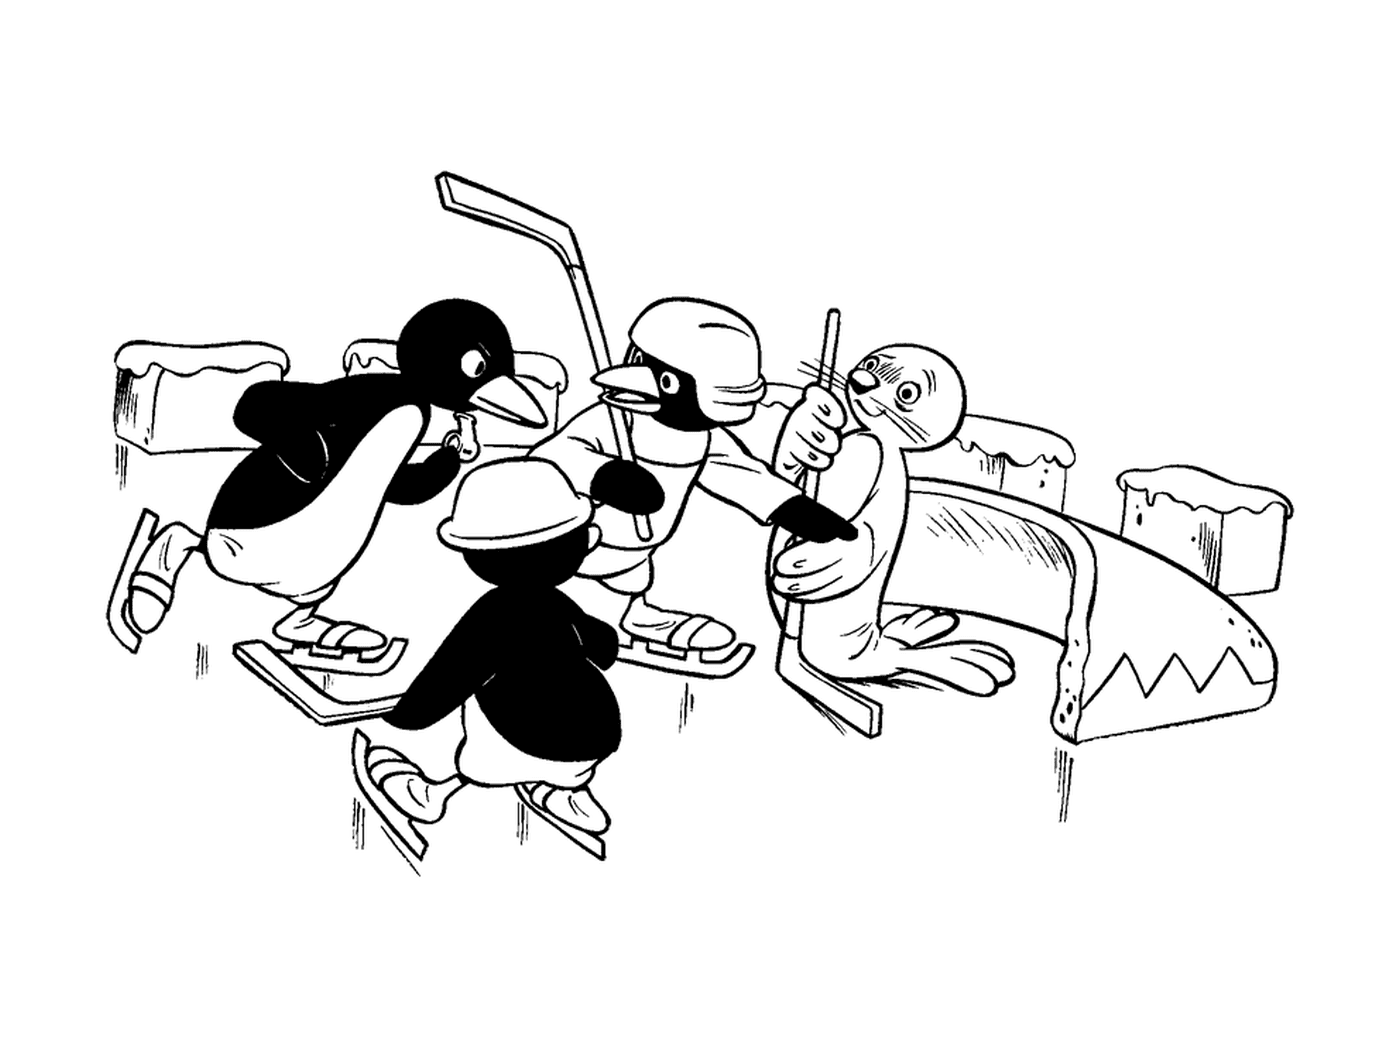  Pingu joga hóquei com seus amigos 